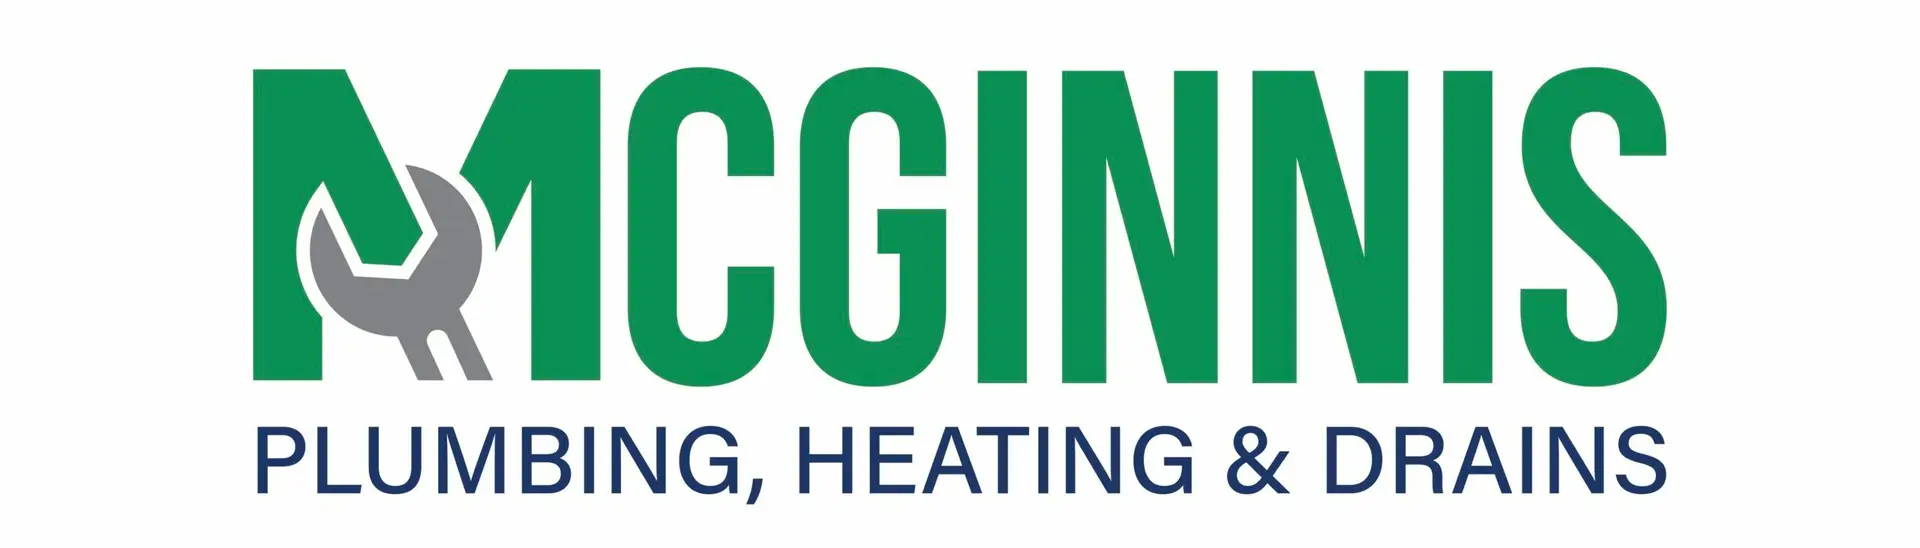 McGinnis Plumbing logo